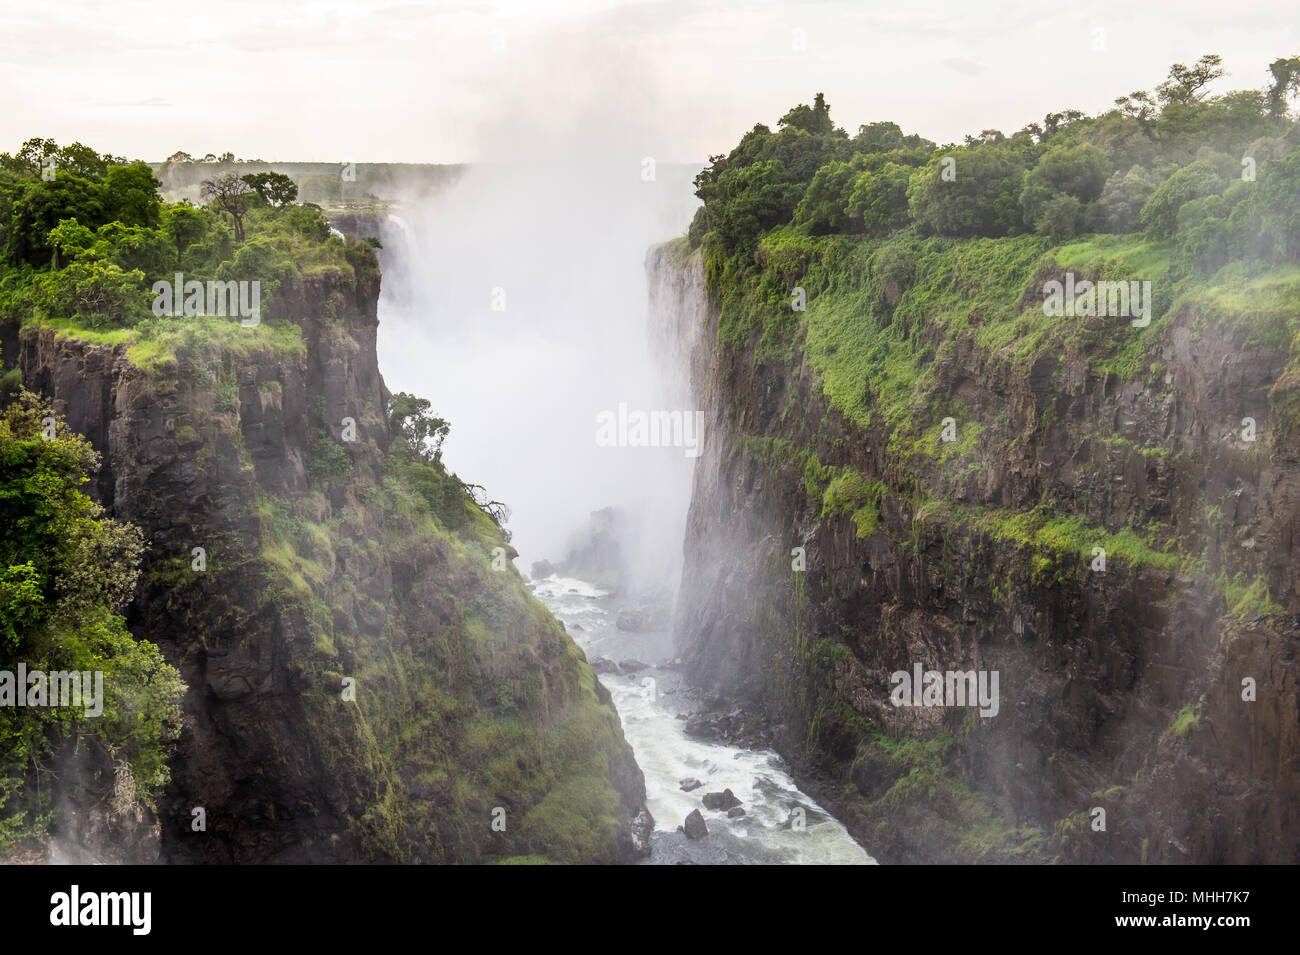 Amazing Victoria Falls, Zambezi River, Zimbabwe and Zambia Stock Photo